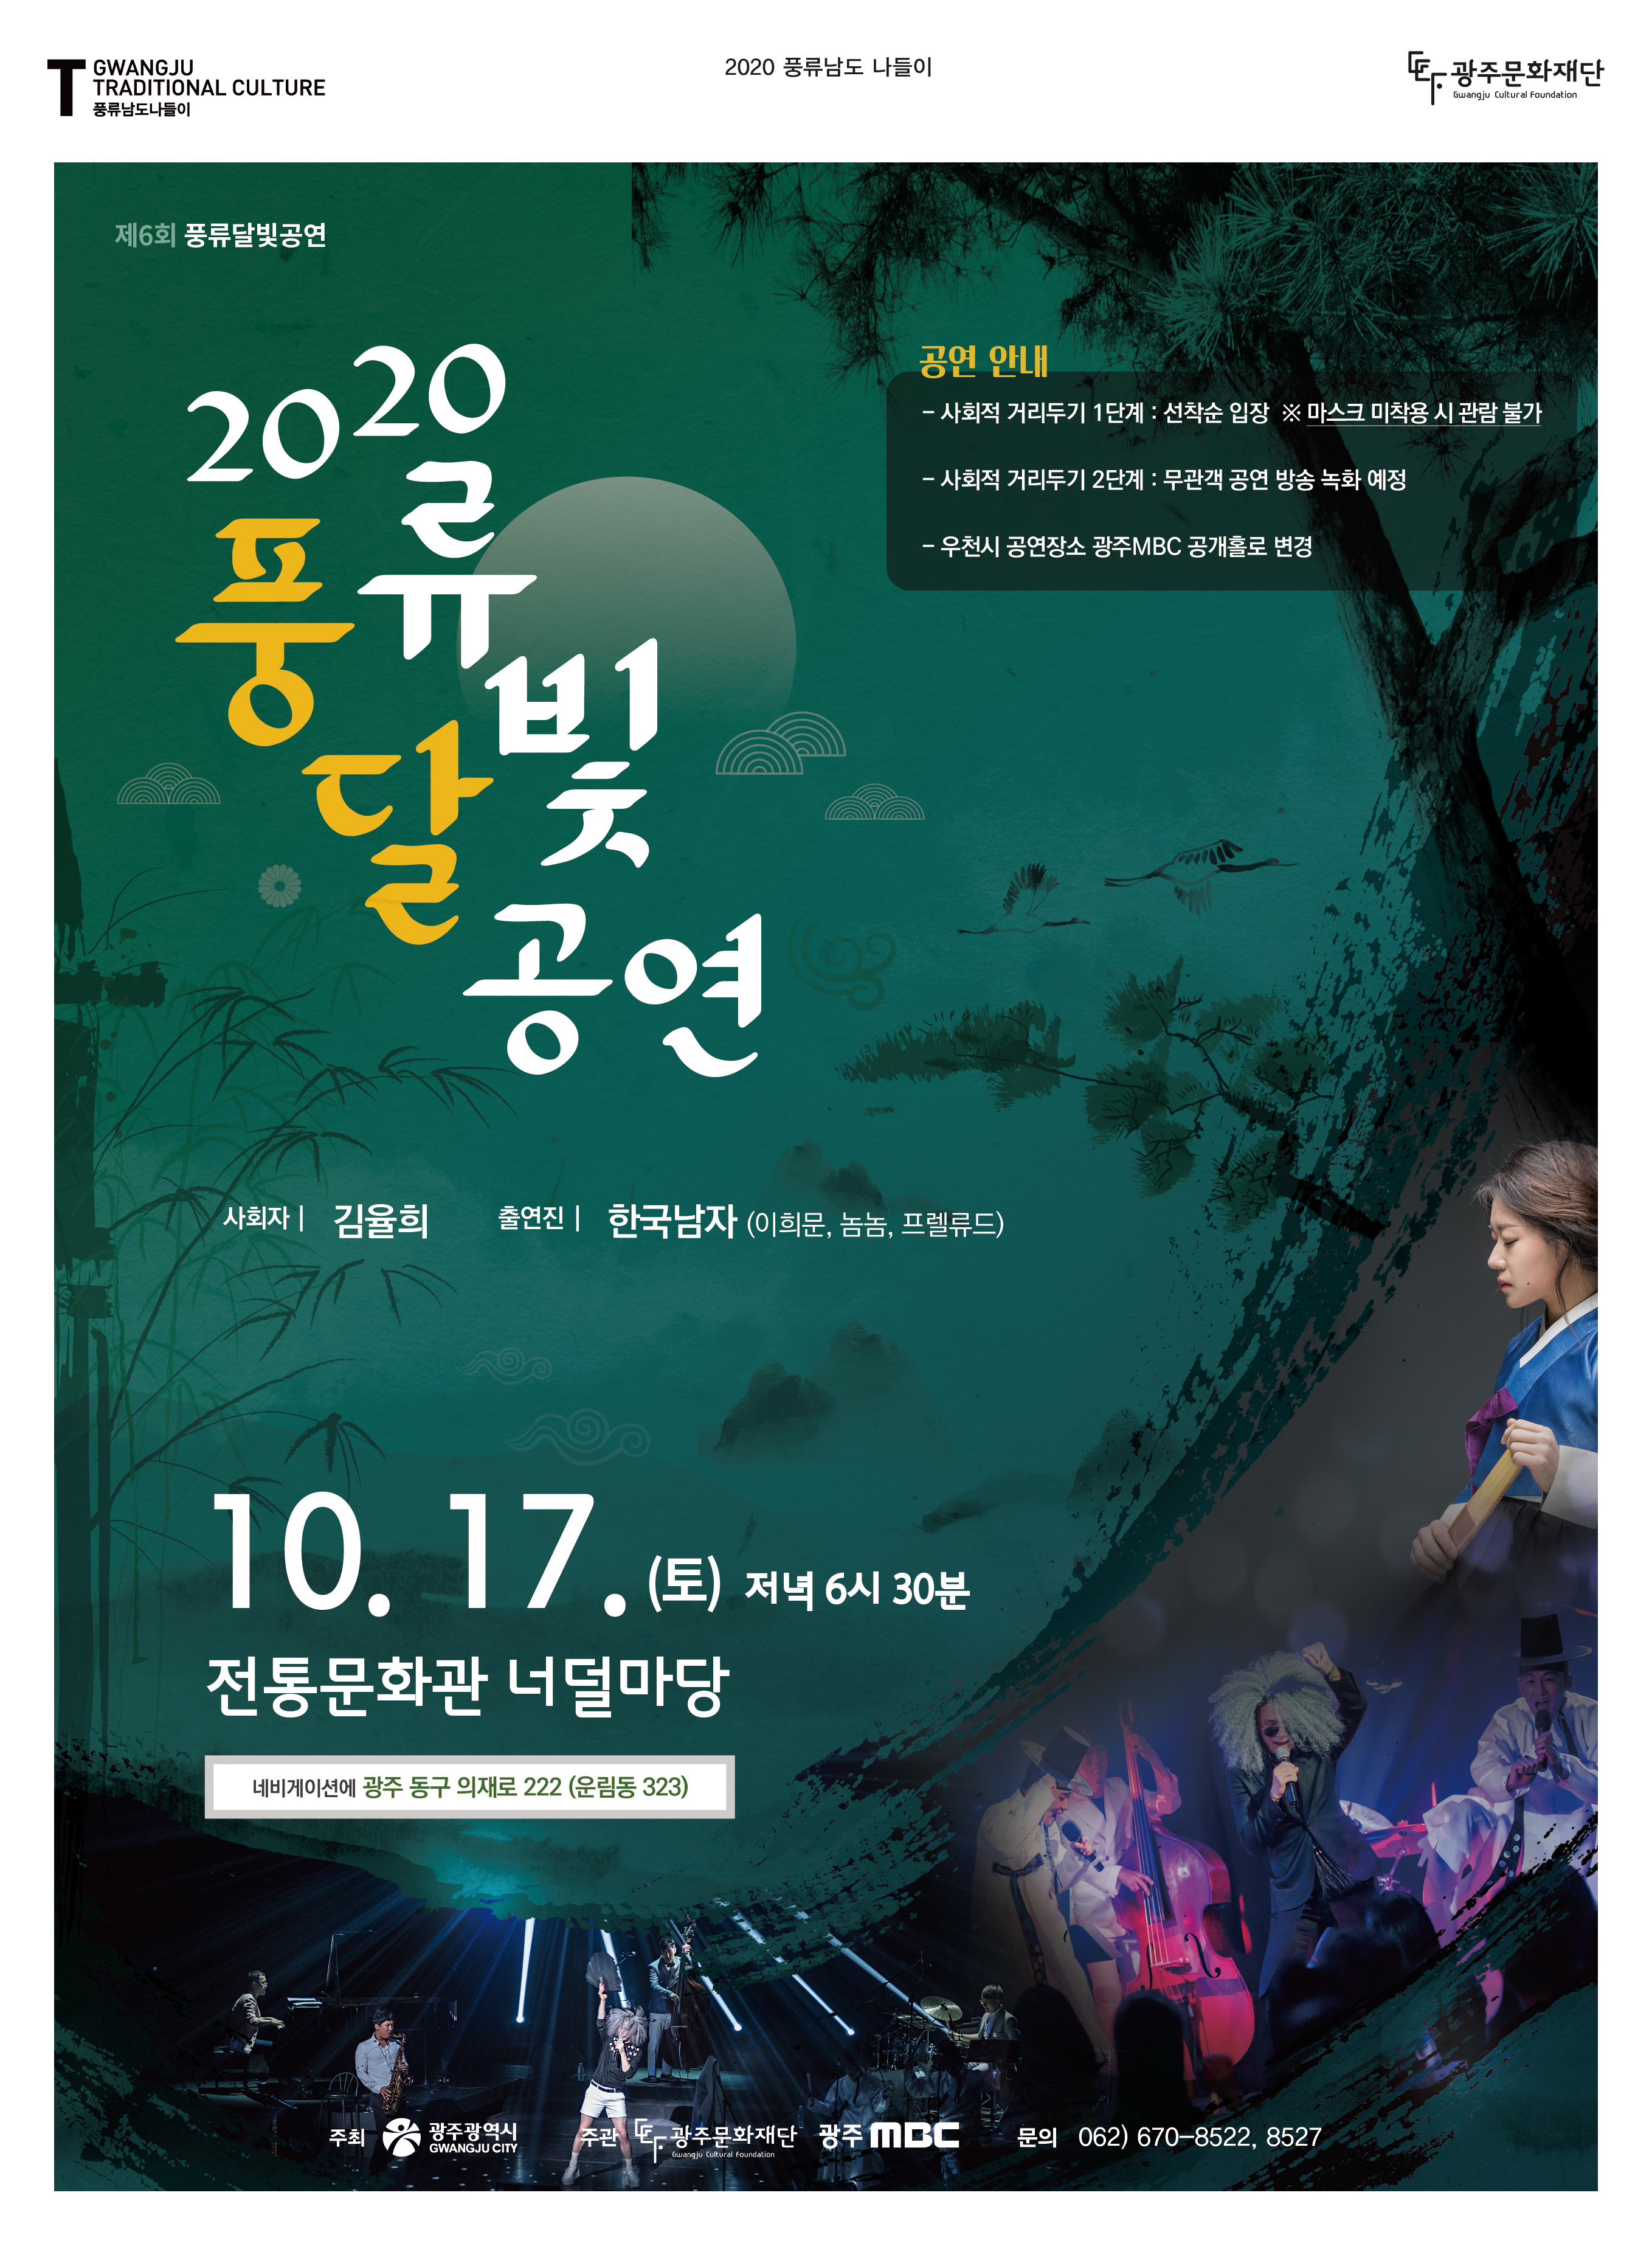 제6회 풍류달빛공연 포스터.jpg